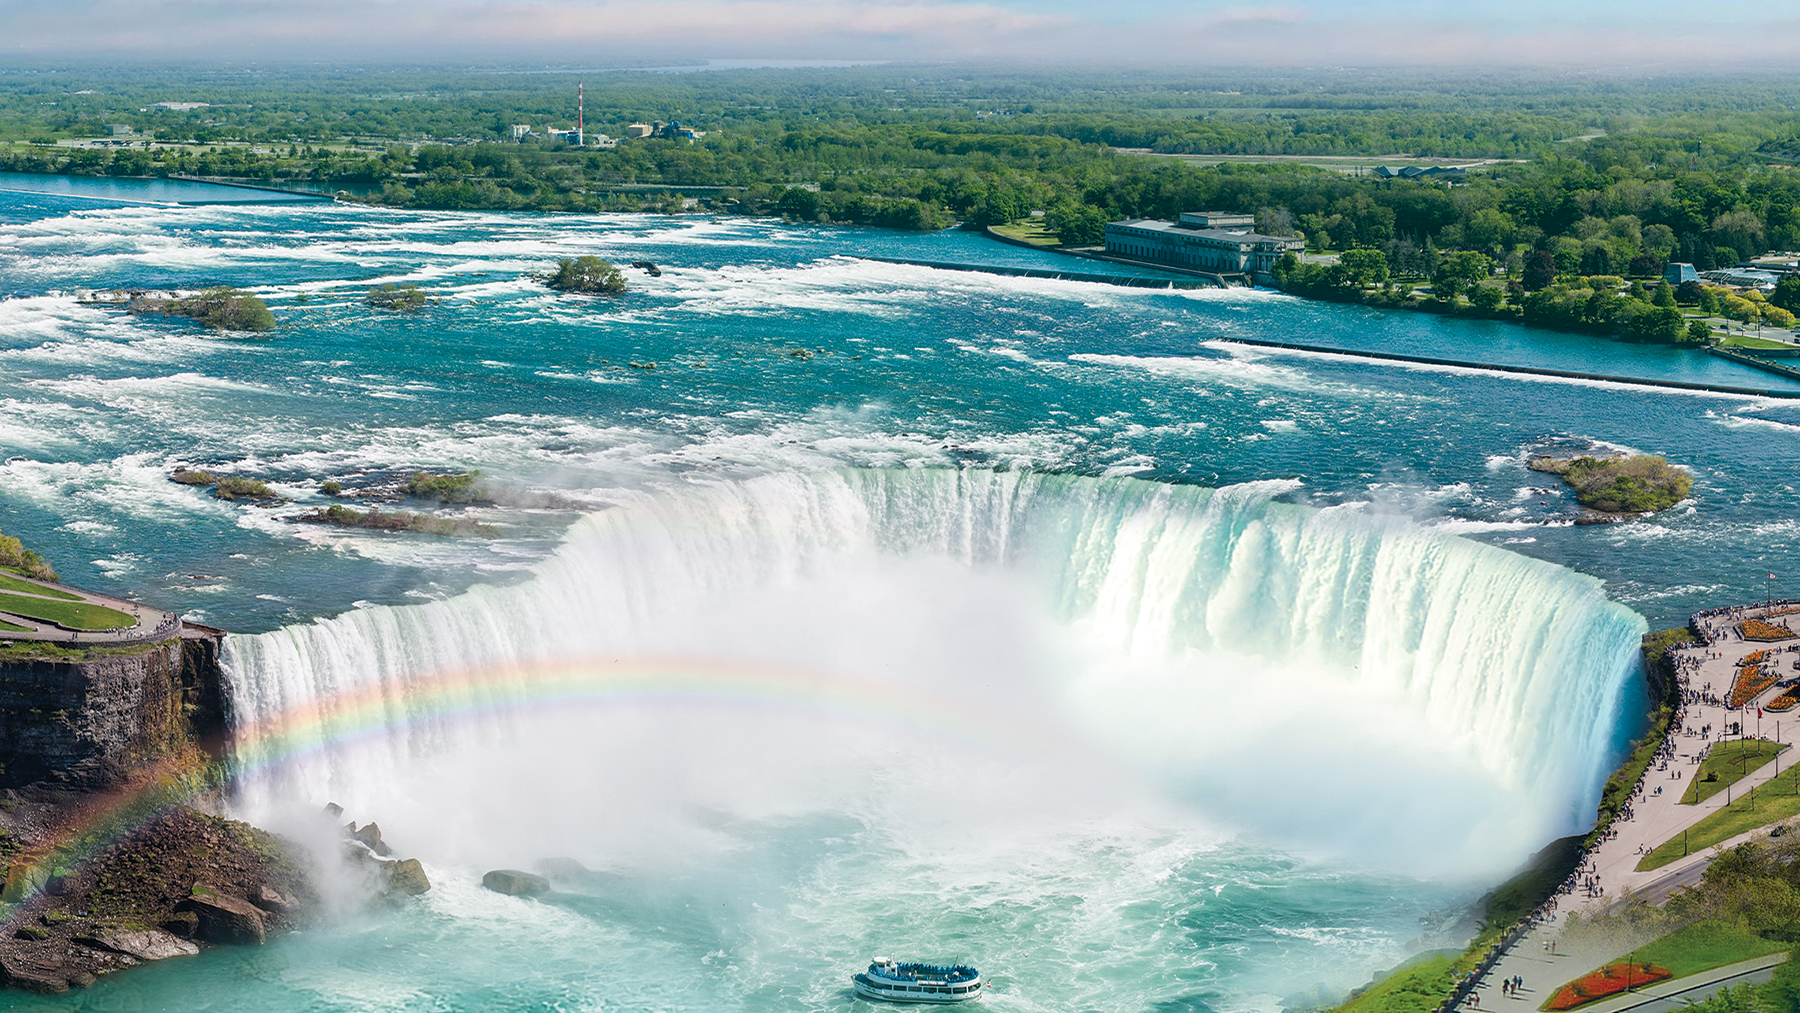 boat at bottom of Niagara falls with rainbow